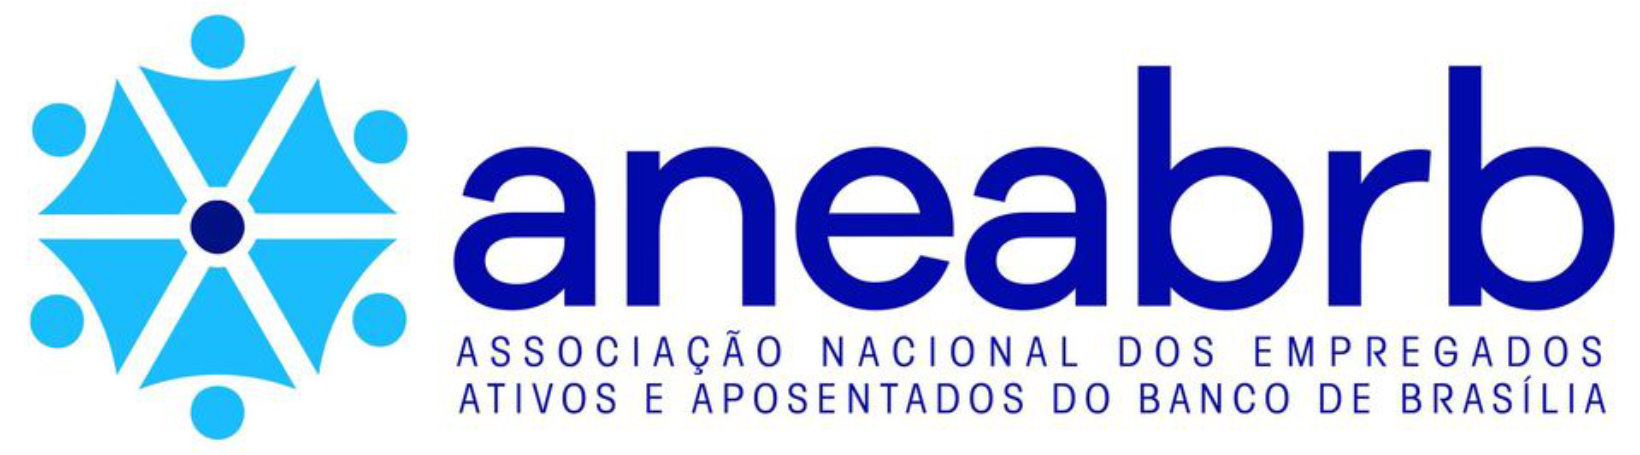 ANEABRB - Associação Nacional dos Empregados do Banco de Brasília